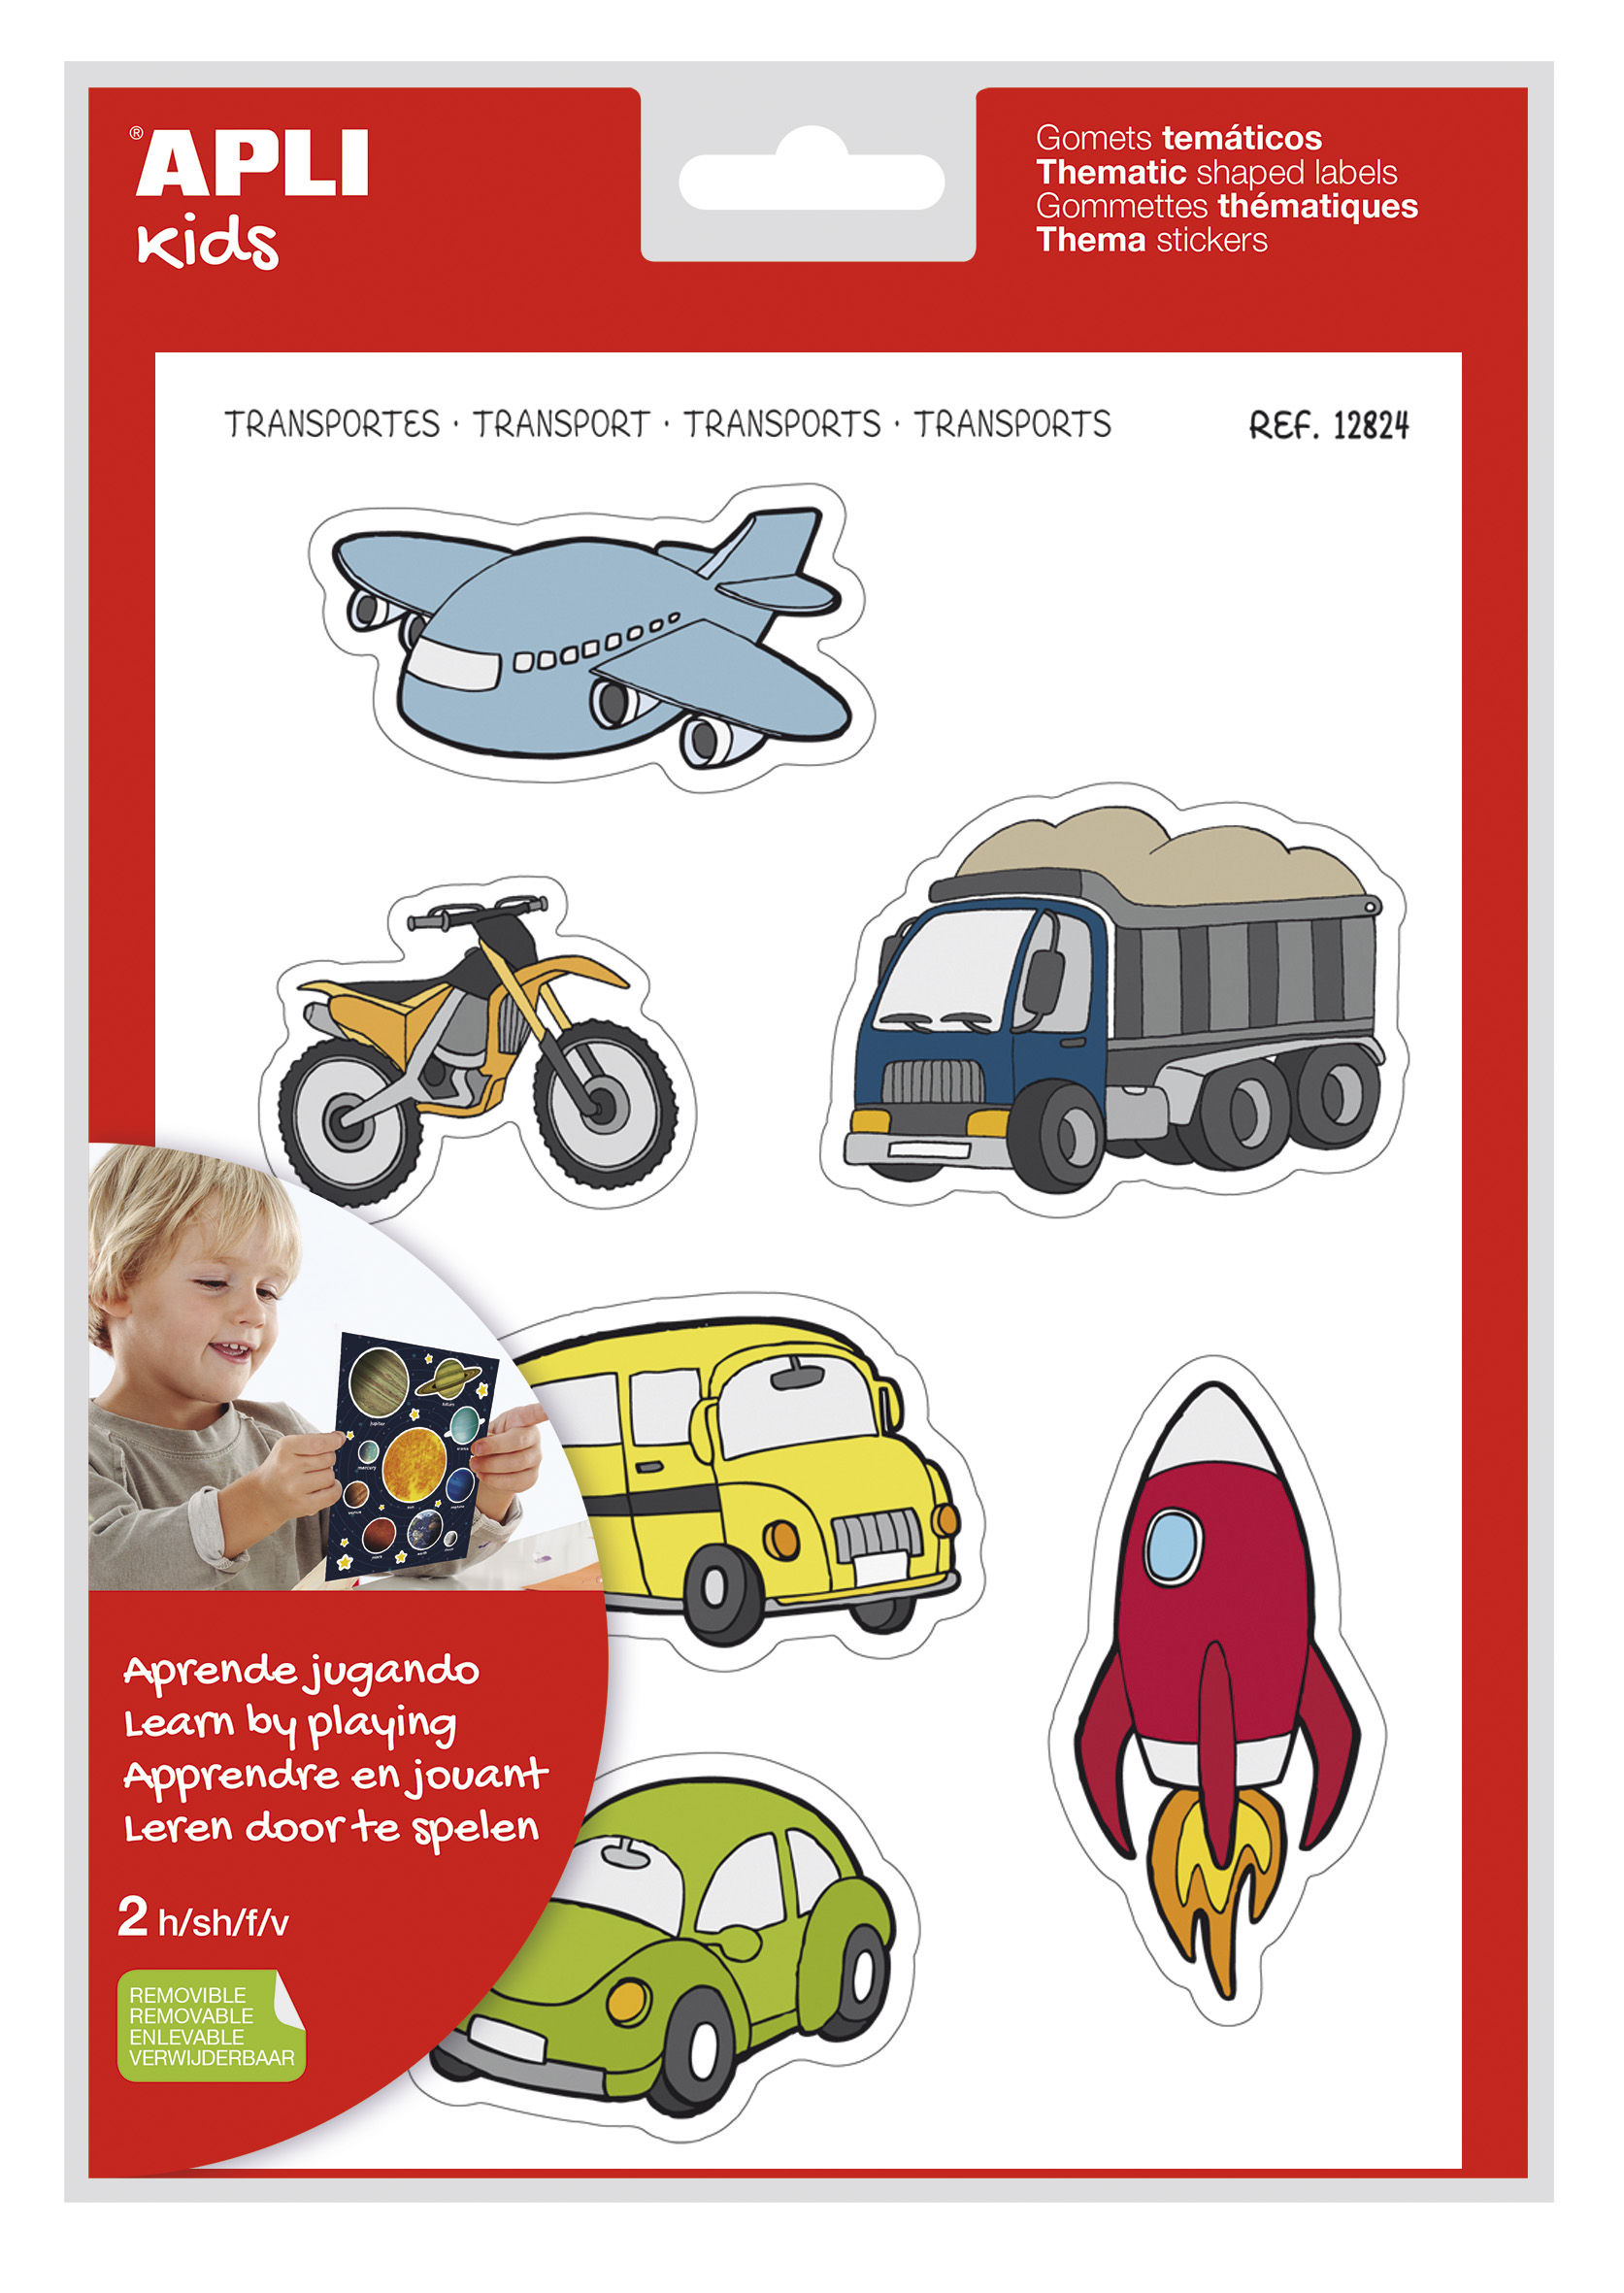 LOT de 5 Apli Transport Theme Stickers xL - 24 Stickers sur 2 Feuilles A4 - Illustrations Moyens de Transport - Adhésif Amovible - Taille XL sans Bordure - Adhésif à Base d'Eau - Sans Solvant - Coloré